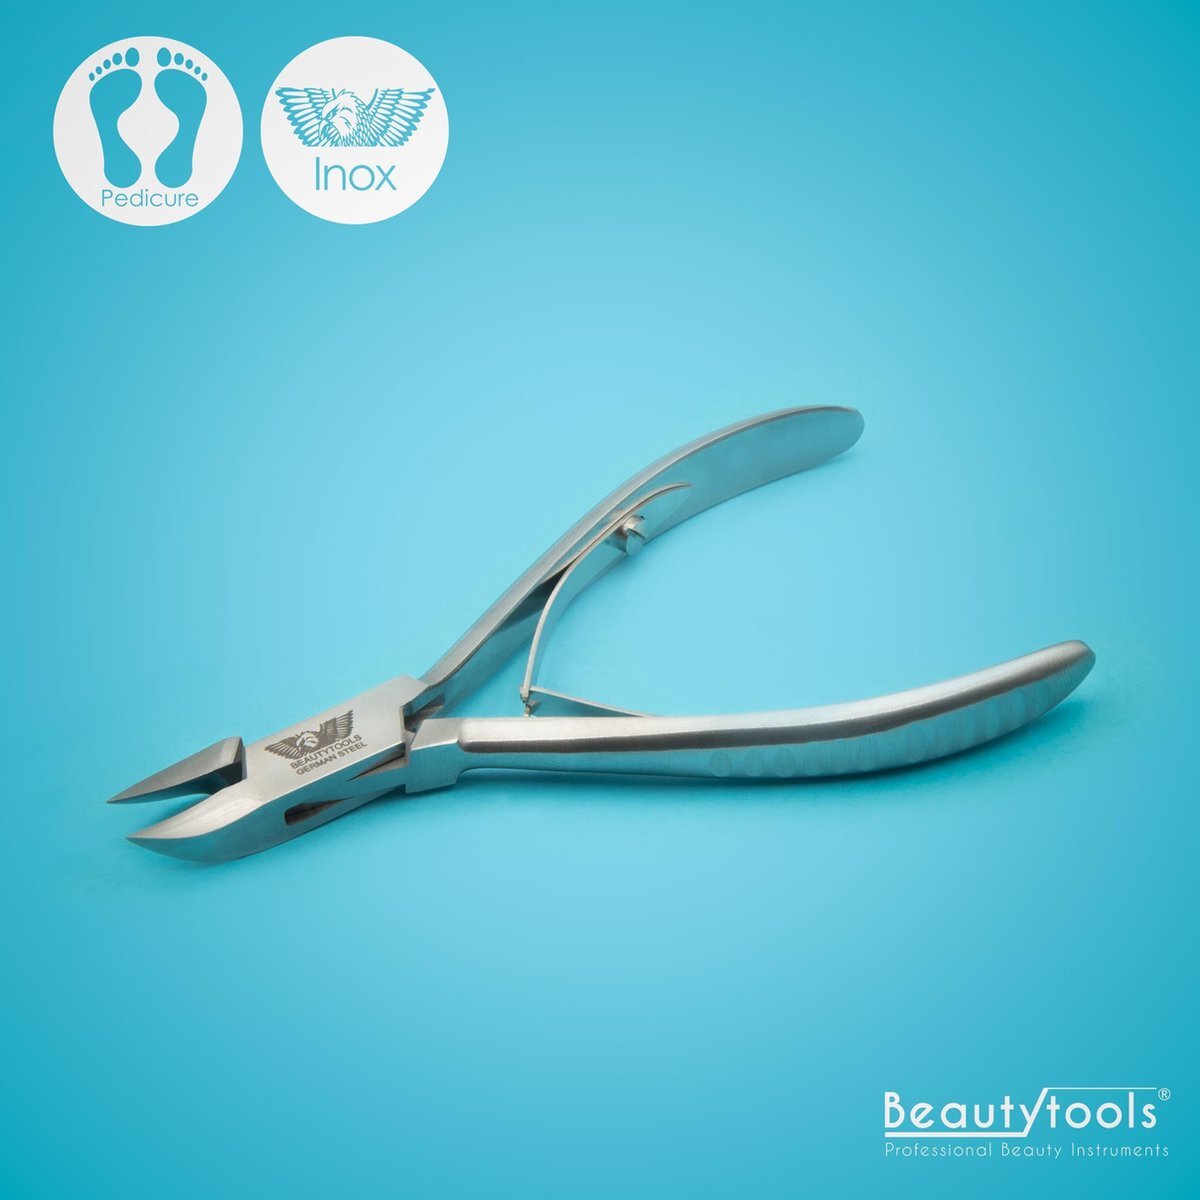 Beautytools.be BeautyTools INOX Nagelknipper/Nageltang Voor Manicure/Pedicure Met Spitse Punt Voor Nagelhoekjes – Voor Vinger- en Teennagels - 15 mm Gebogen Bek (NN-0096)